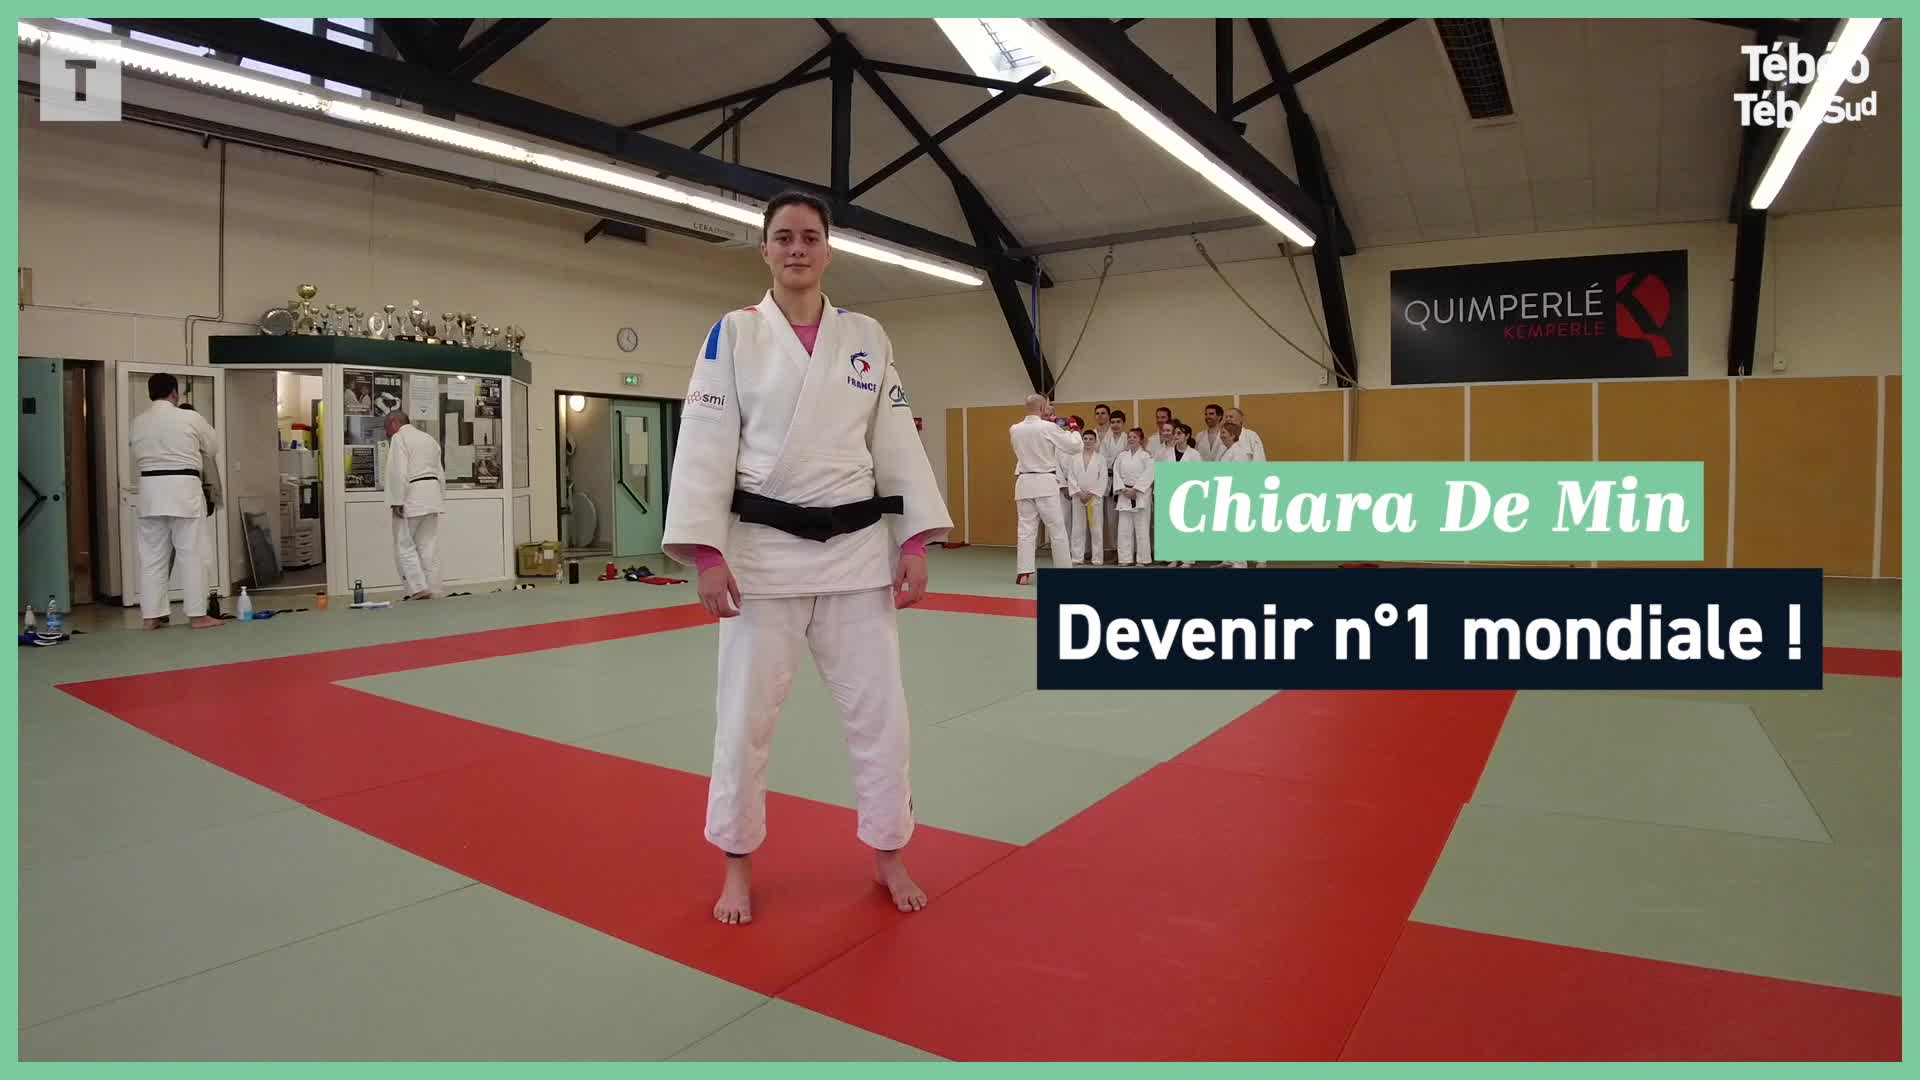 Championnats de France de Ju-jitsu : Chiara De Min attendue à Gouesnou